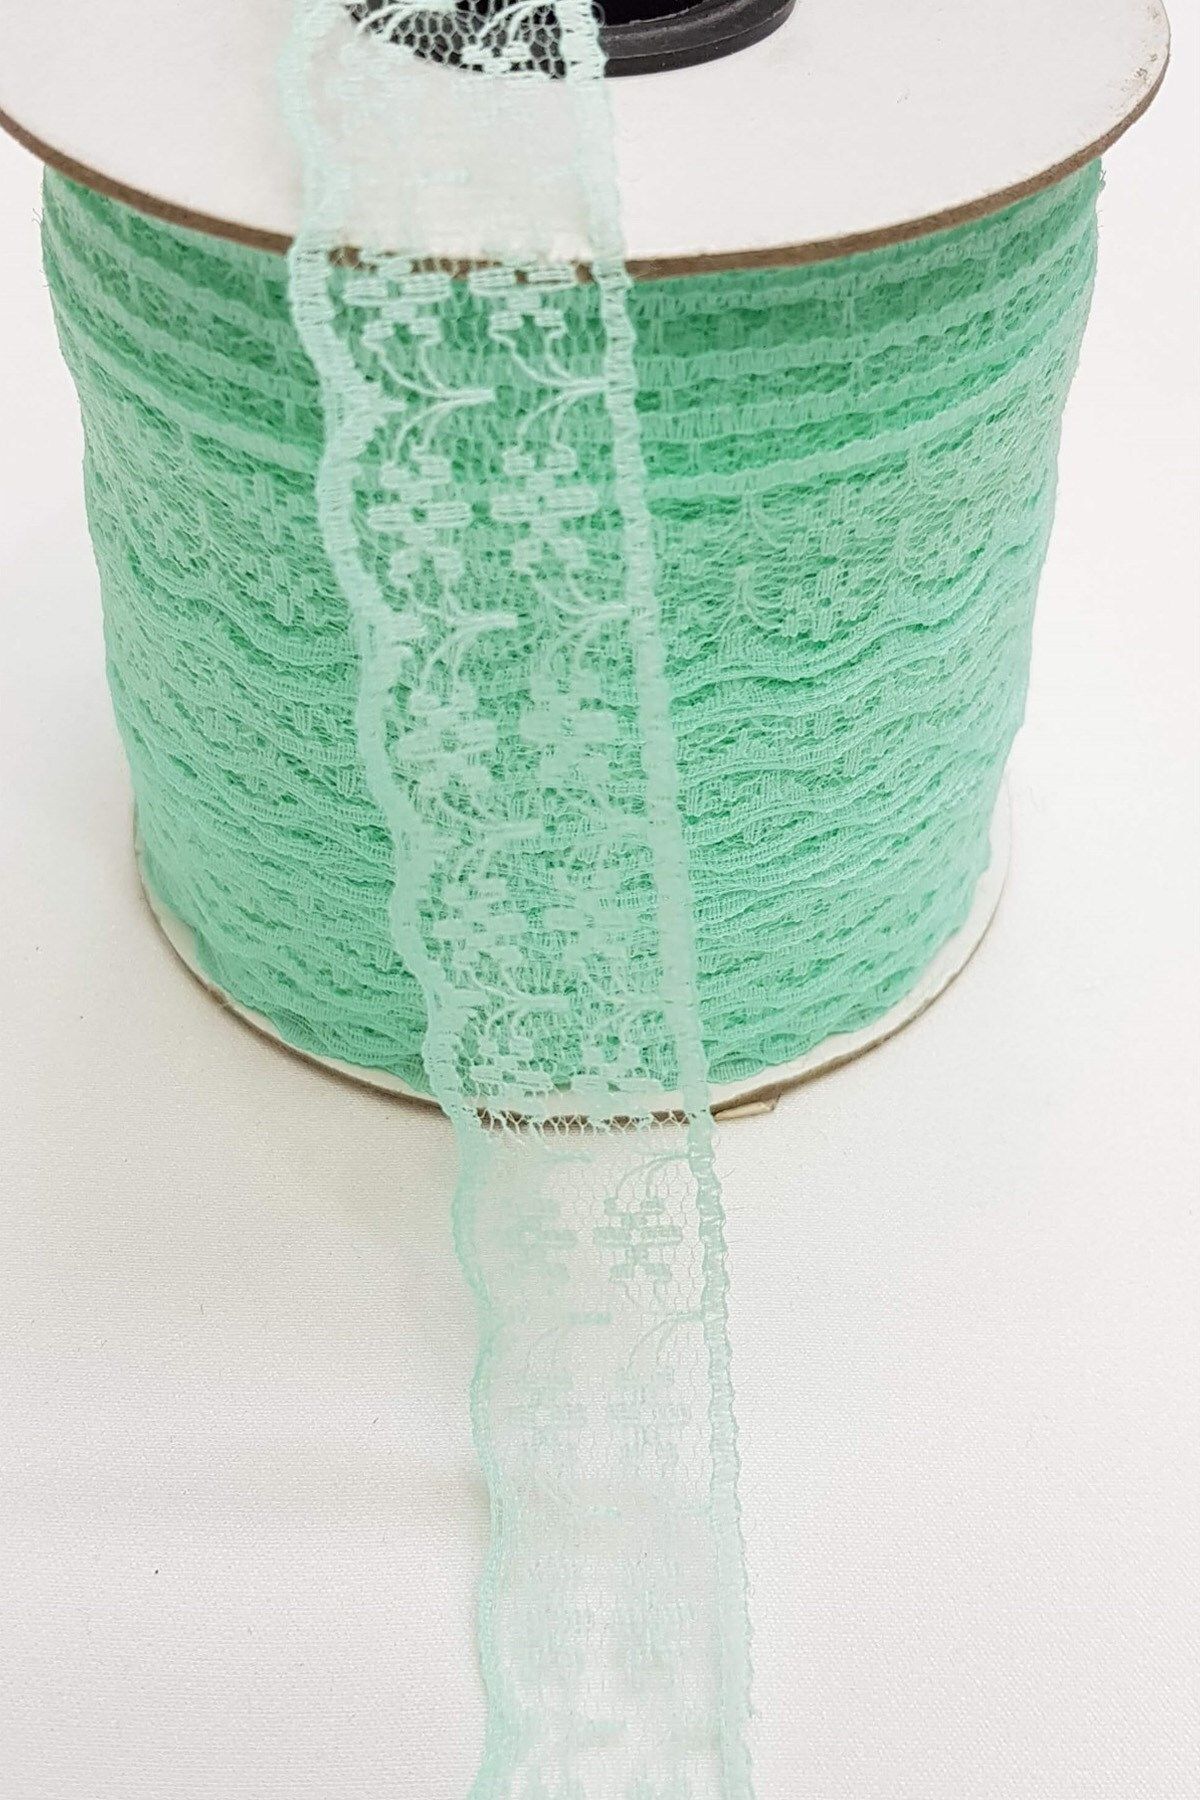 Hobigram Dantel Çeşitleri Su Yeşili Dantel Kurdele 2,5 cm